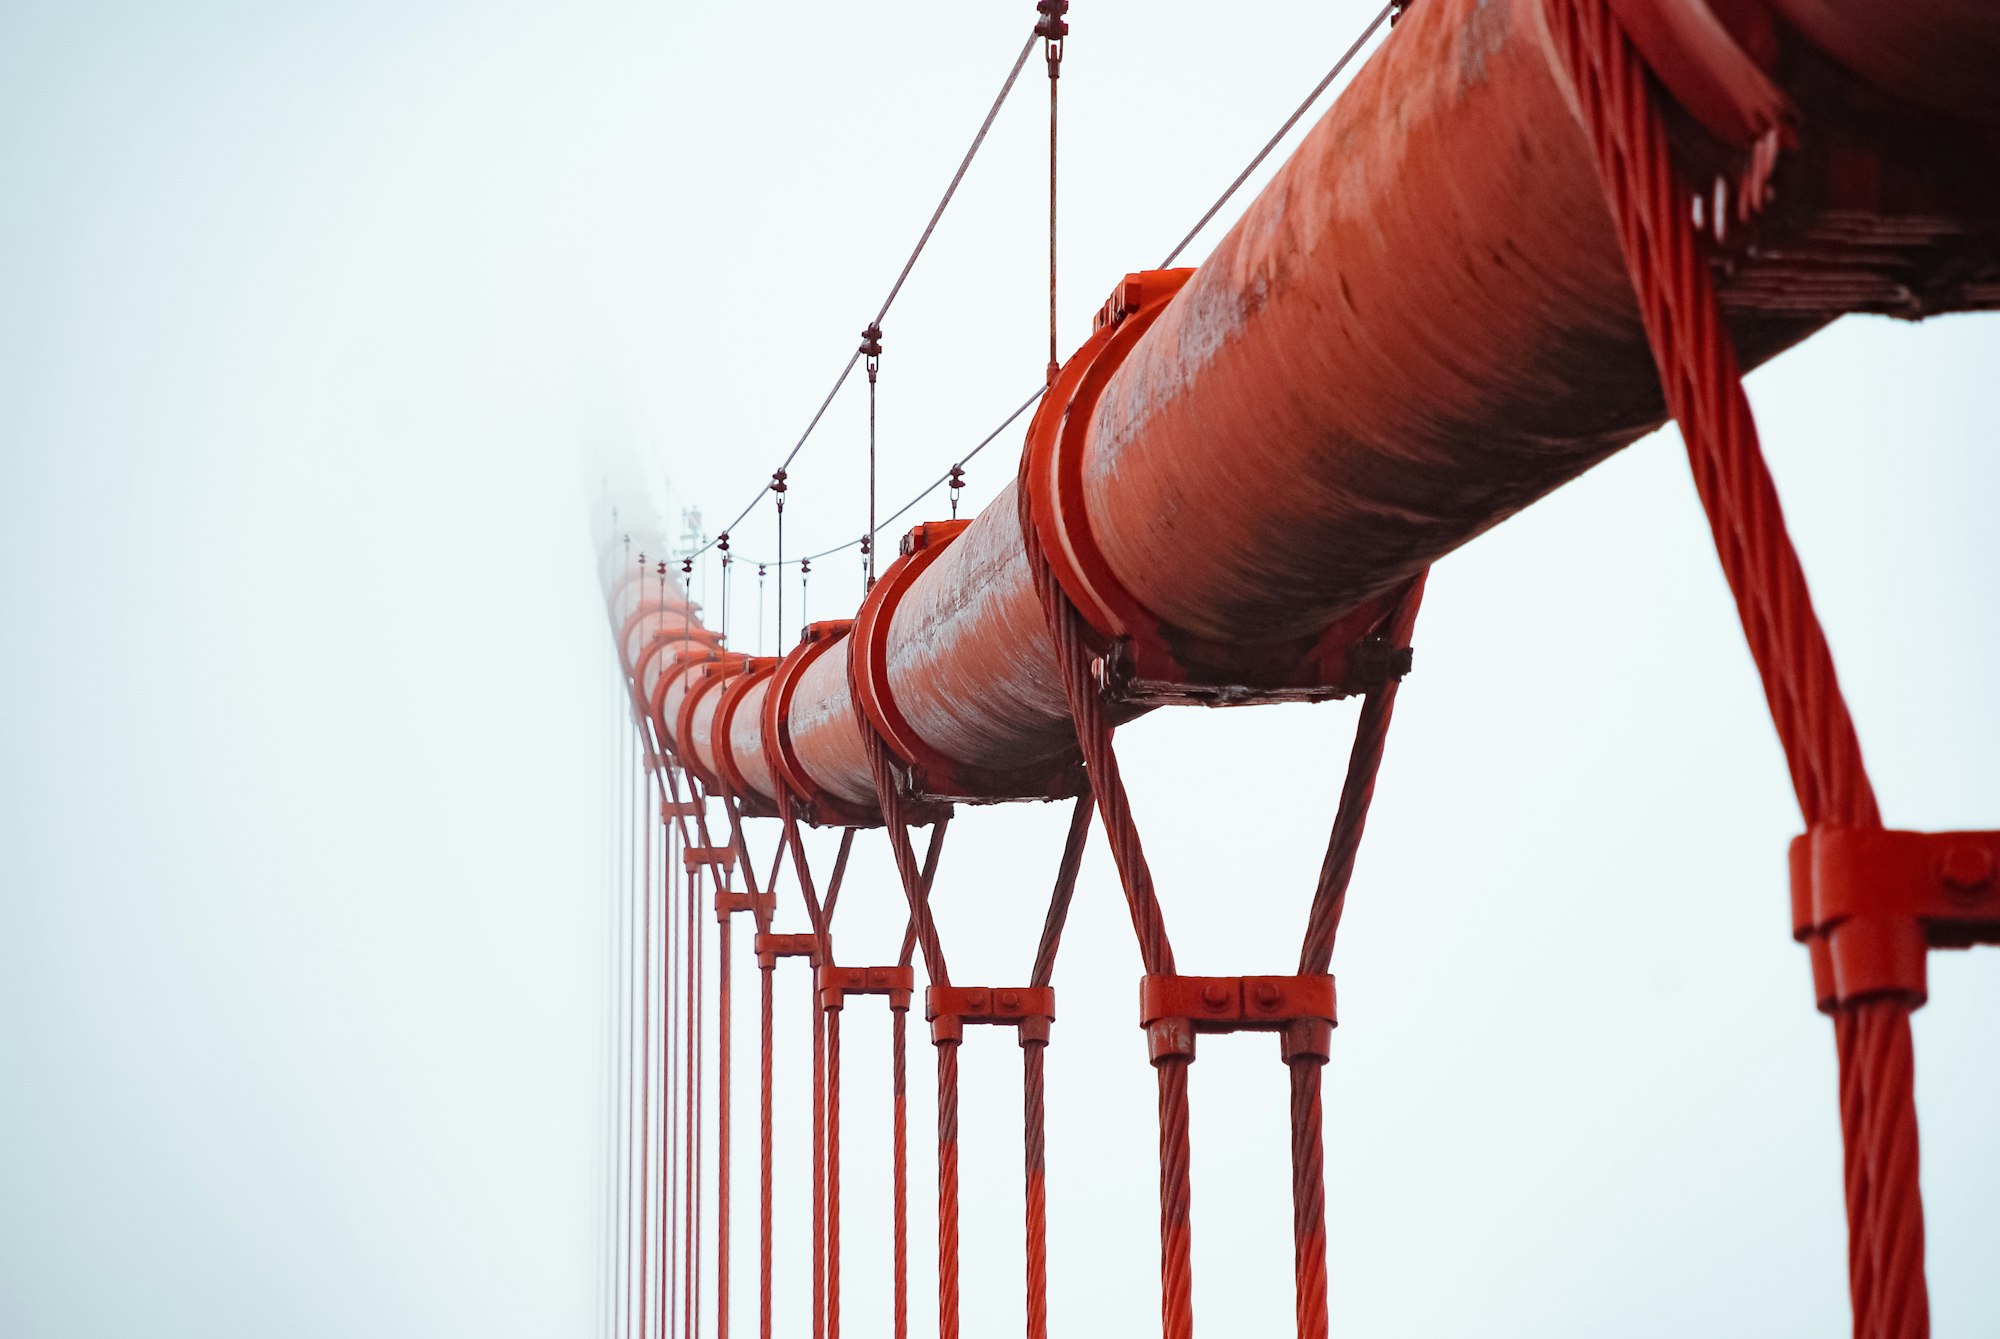 Understanding spacy process pipelines